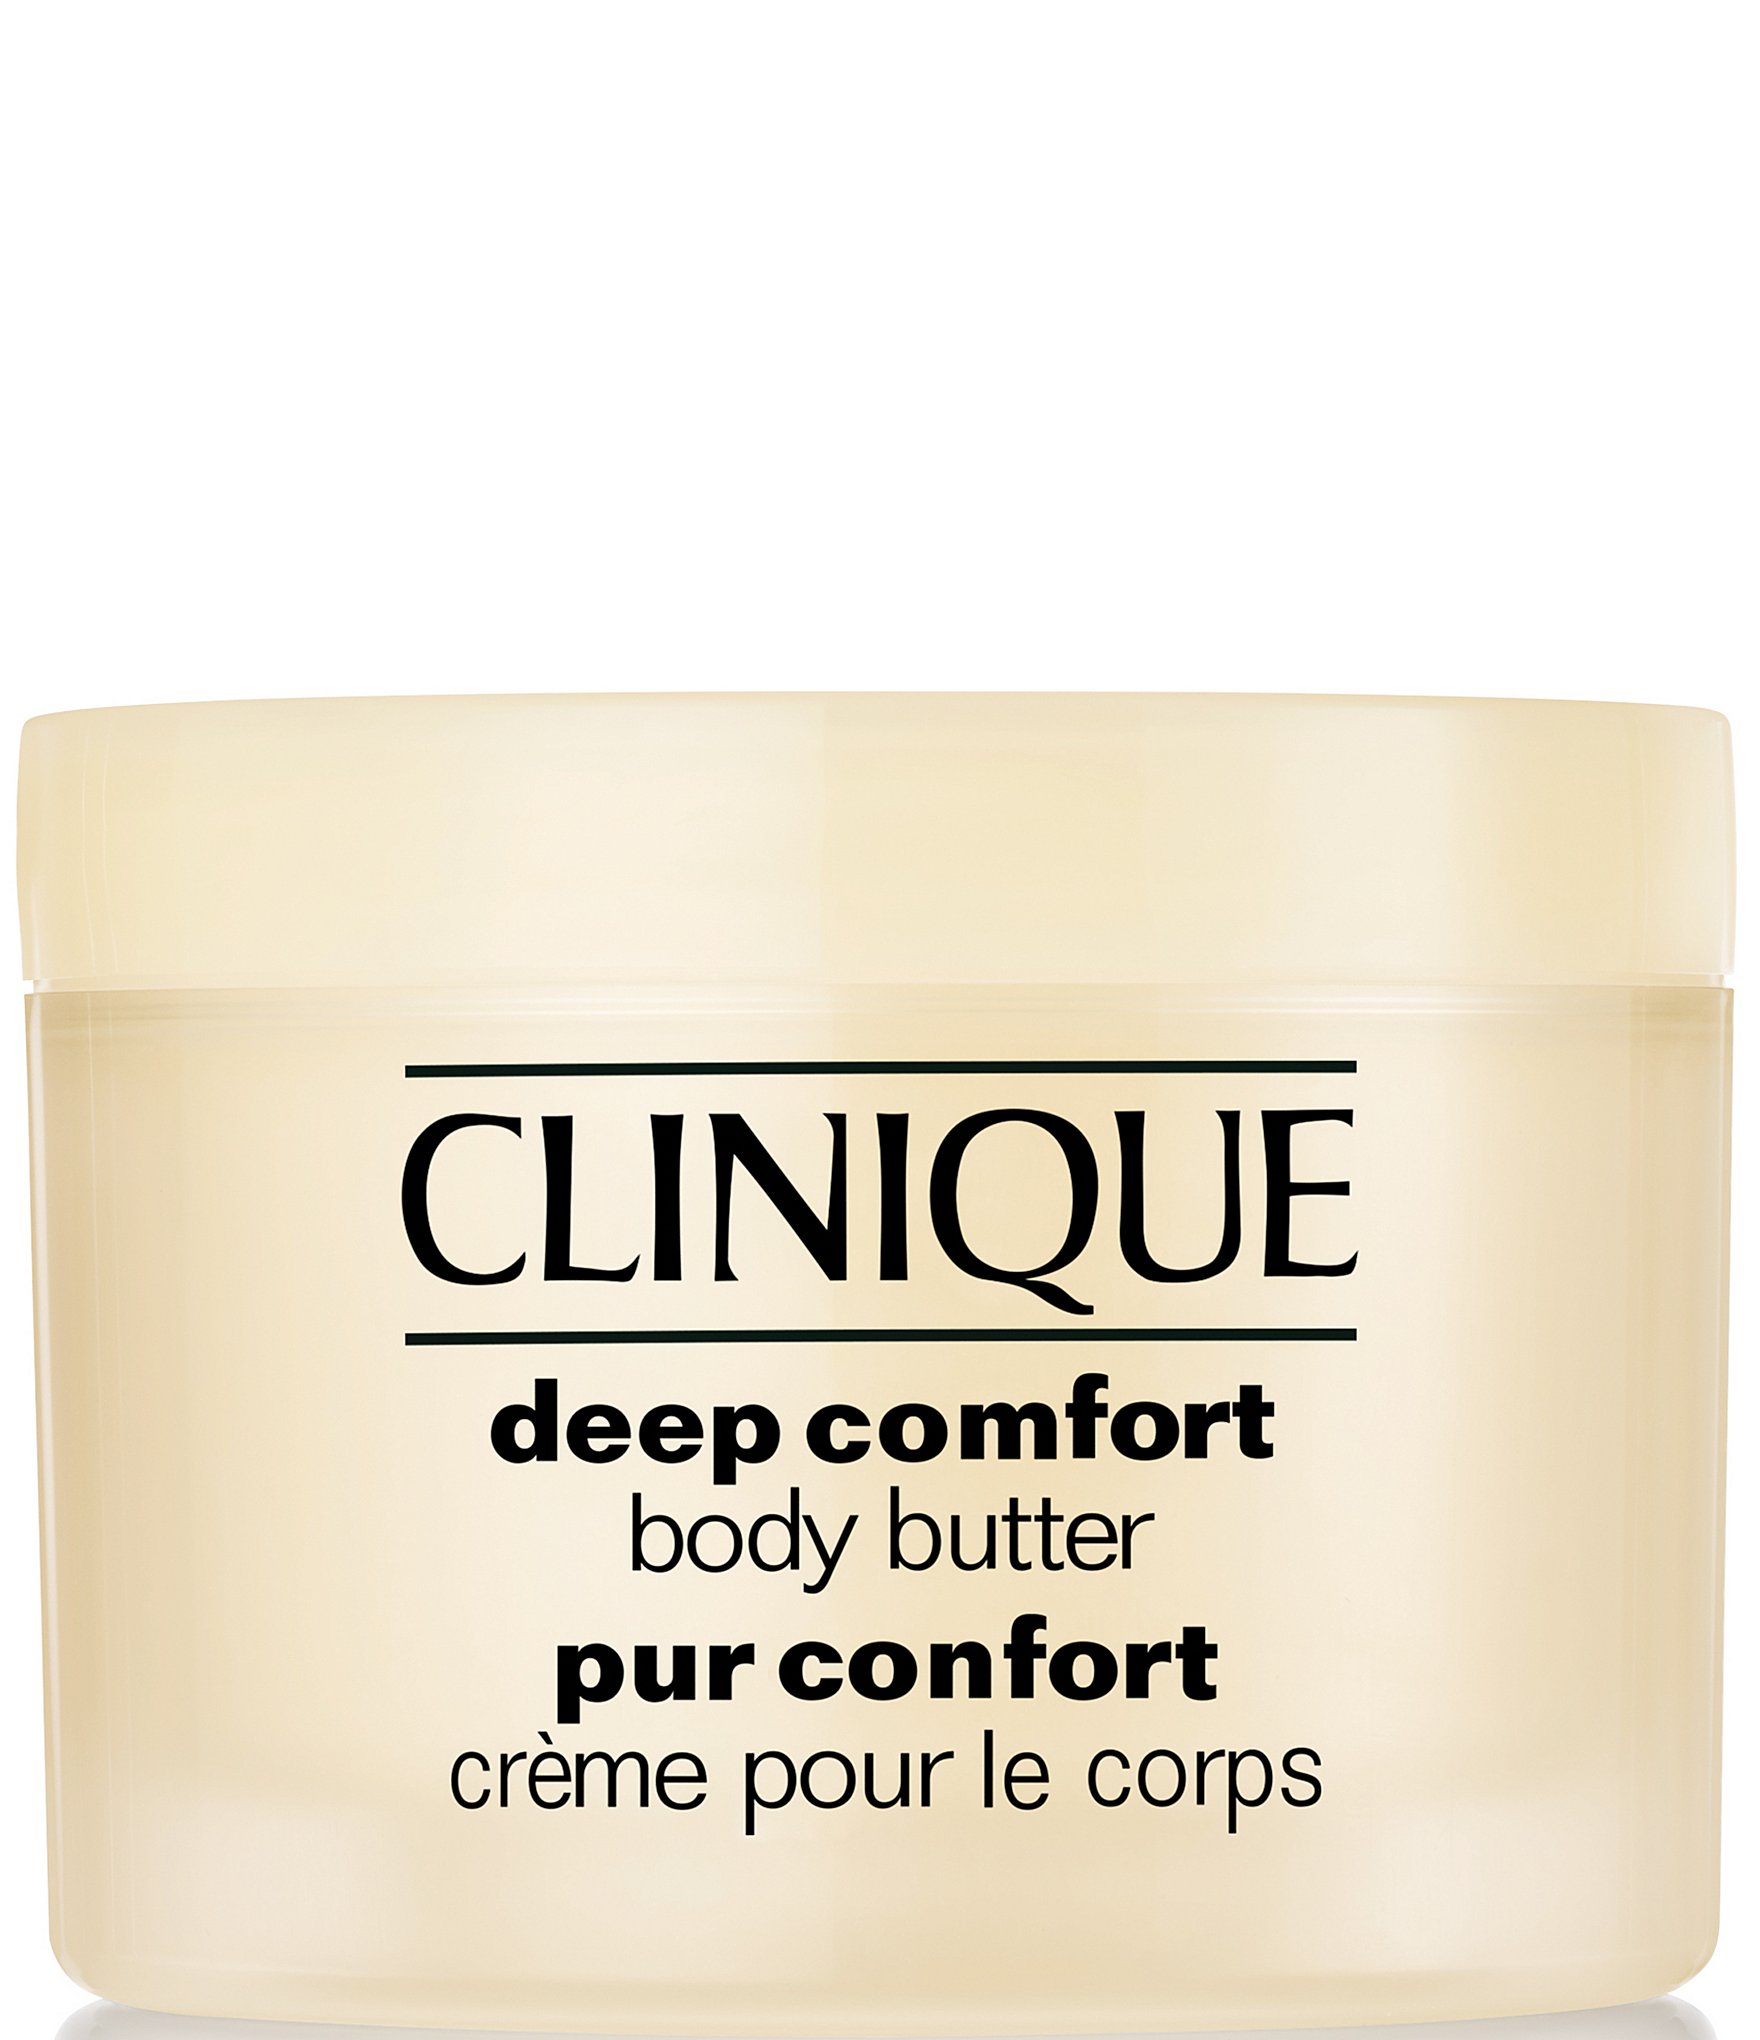 Forsvinde mavepine blur Clinique Deep Comfort Body Butter | Dillard's